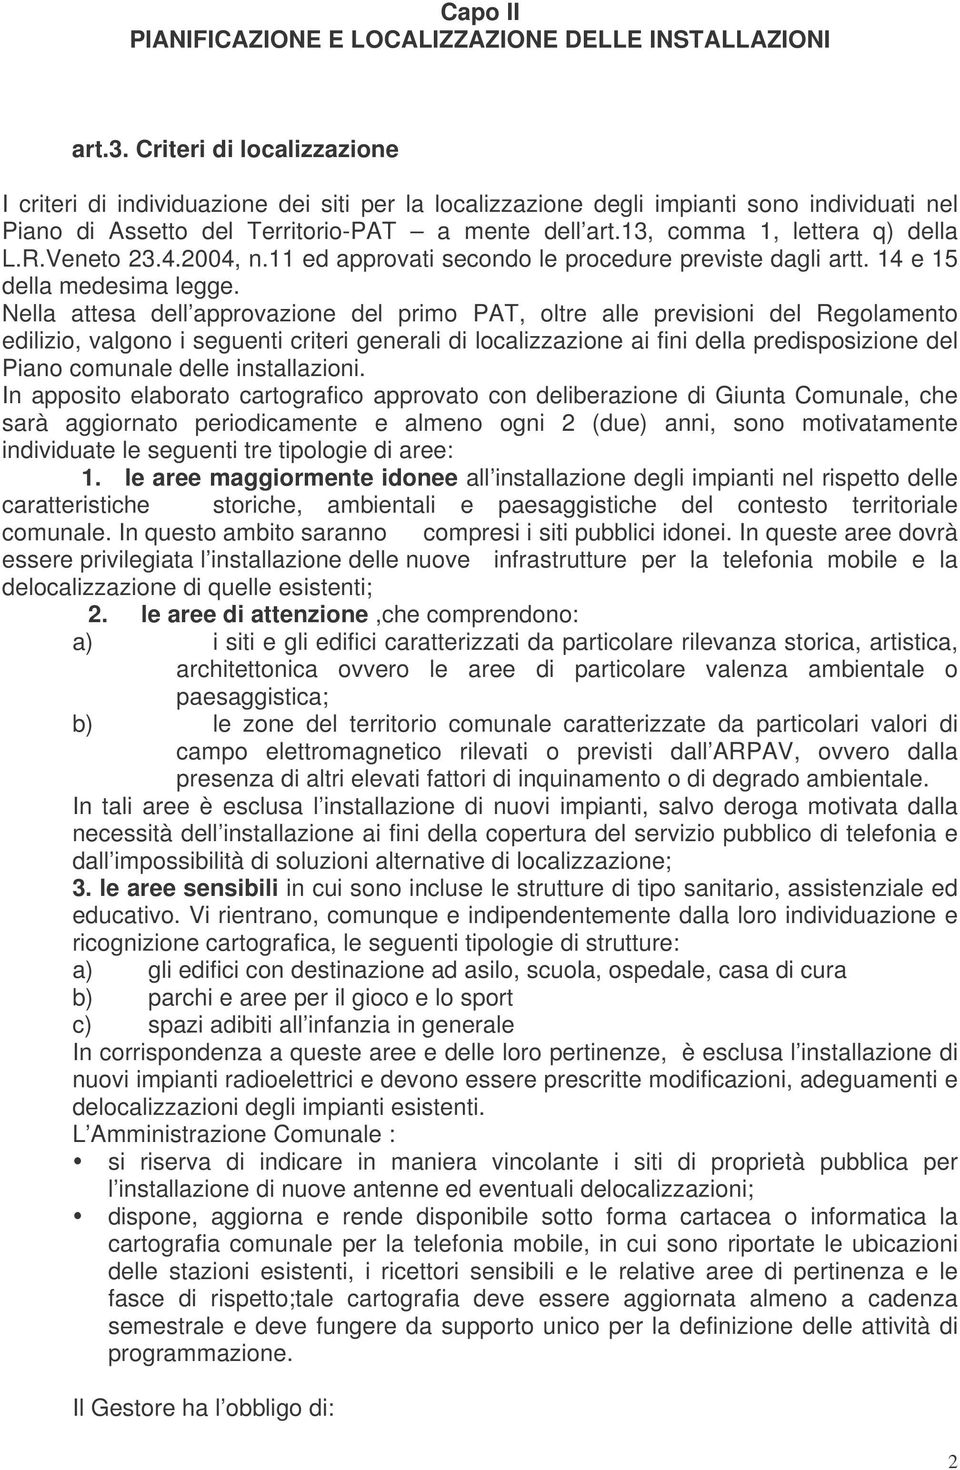 13, comma 1, lettera q) della L.R.Veneto 23.4.2004, n.11 ed approvati secondo le procedure previste dagli artt. 14 e 15 della medesima legge.